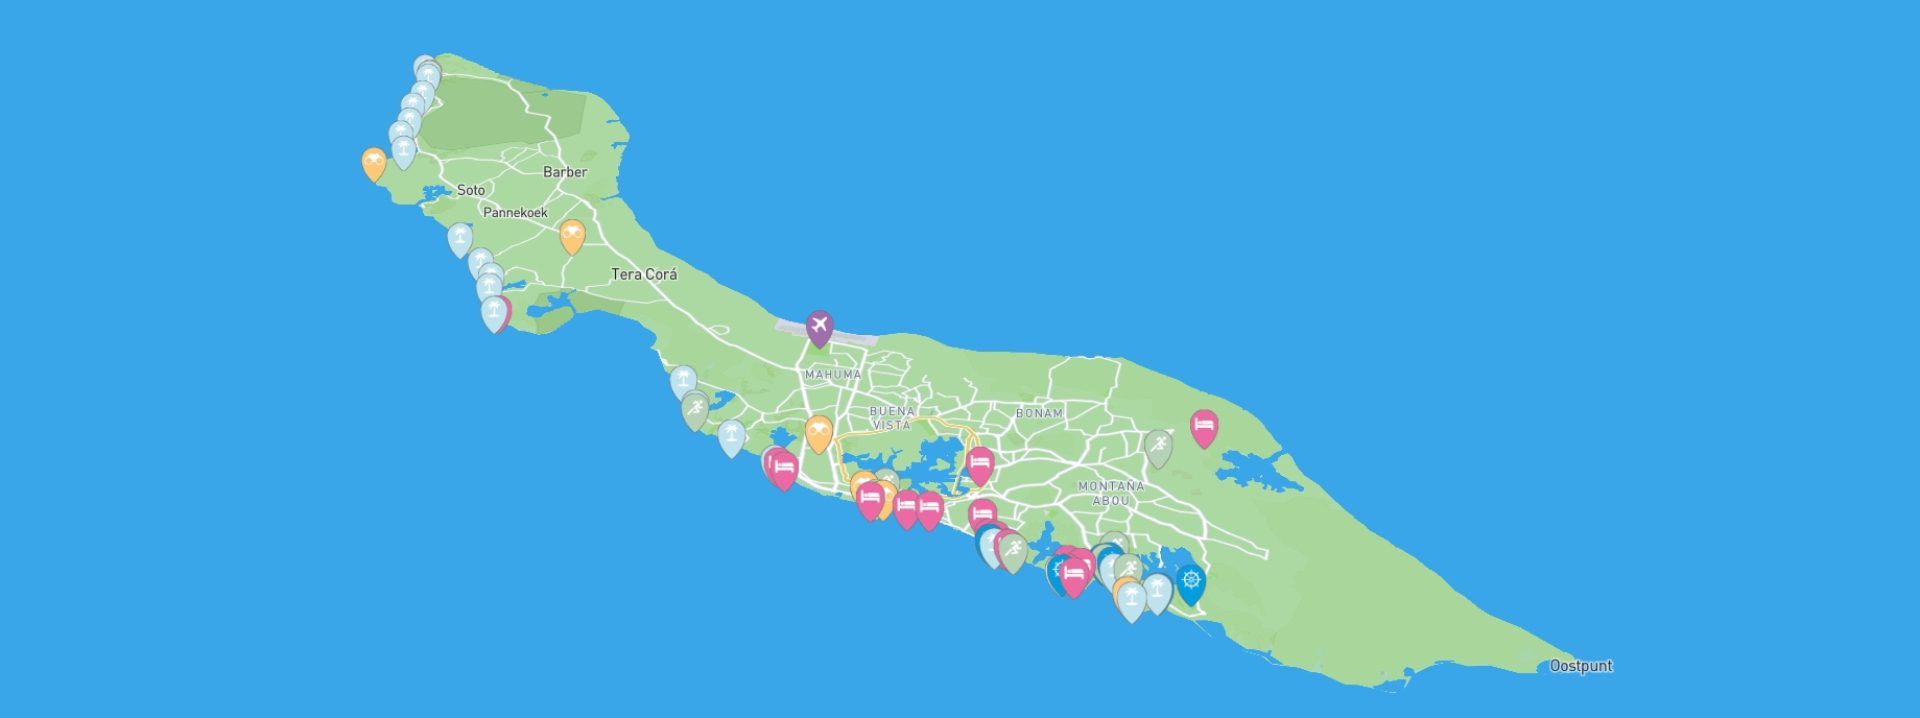 curacao map interactive